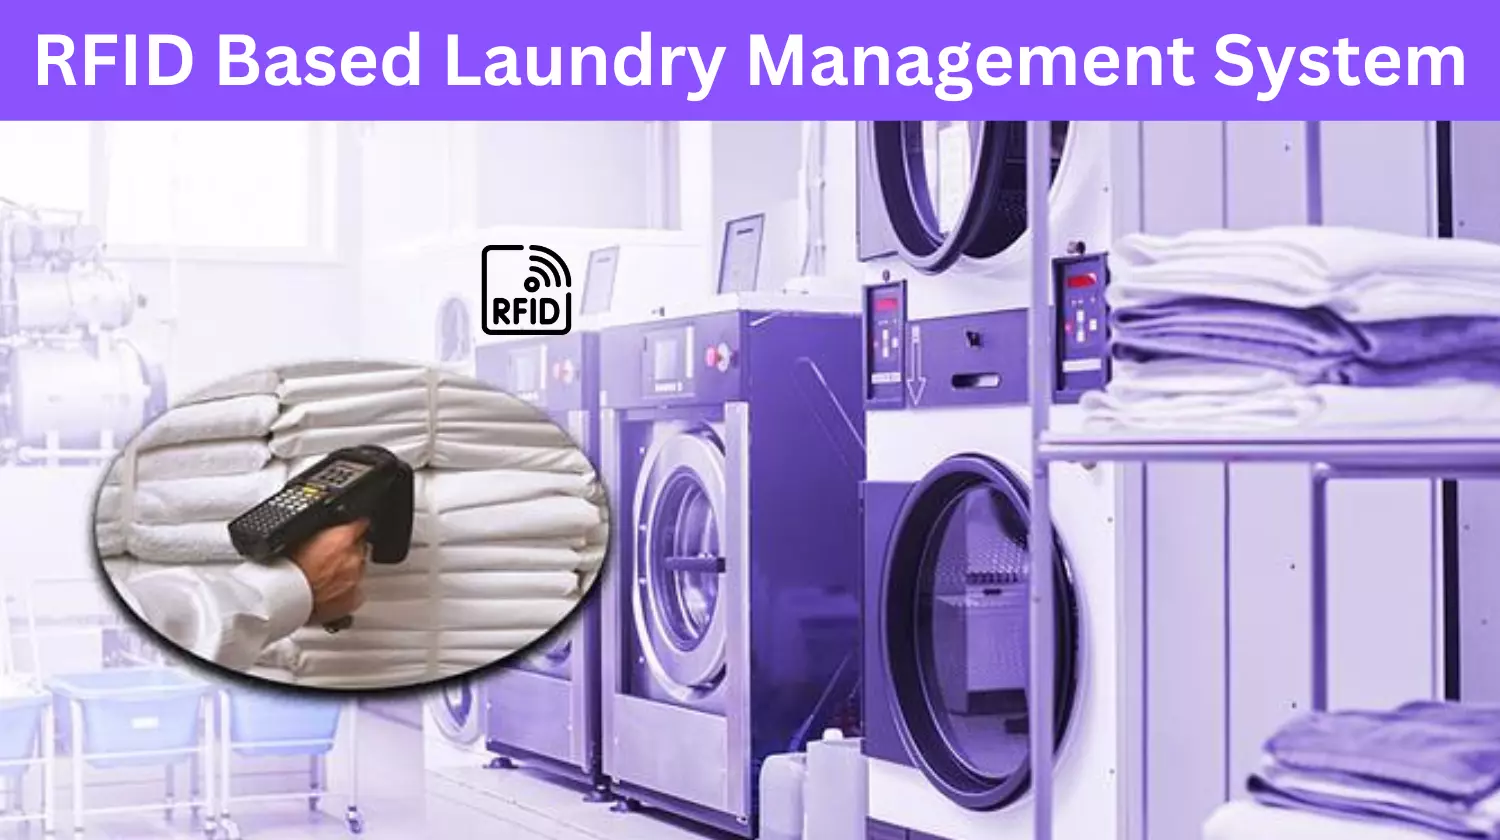 RFID Based Laundry Management System